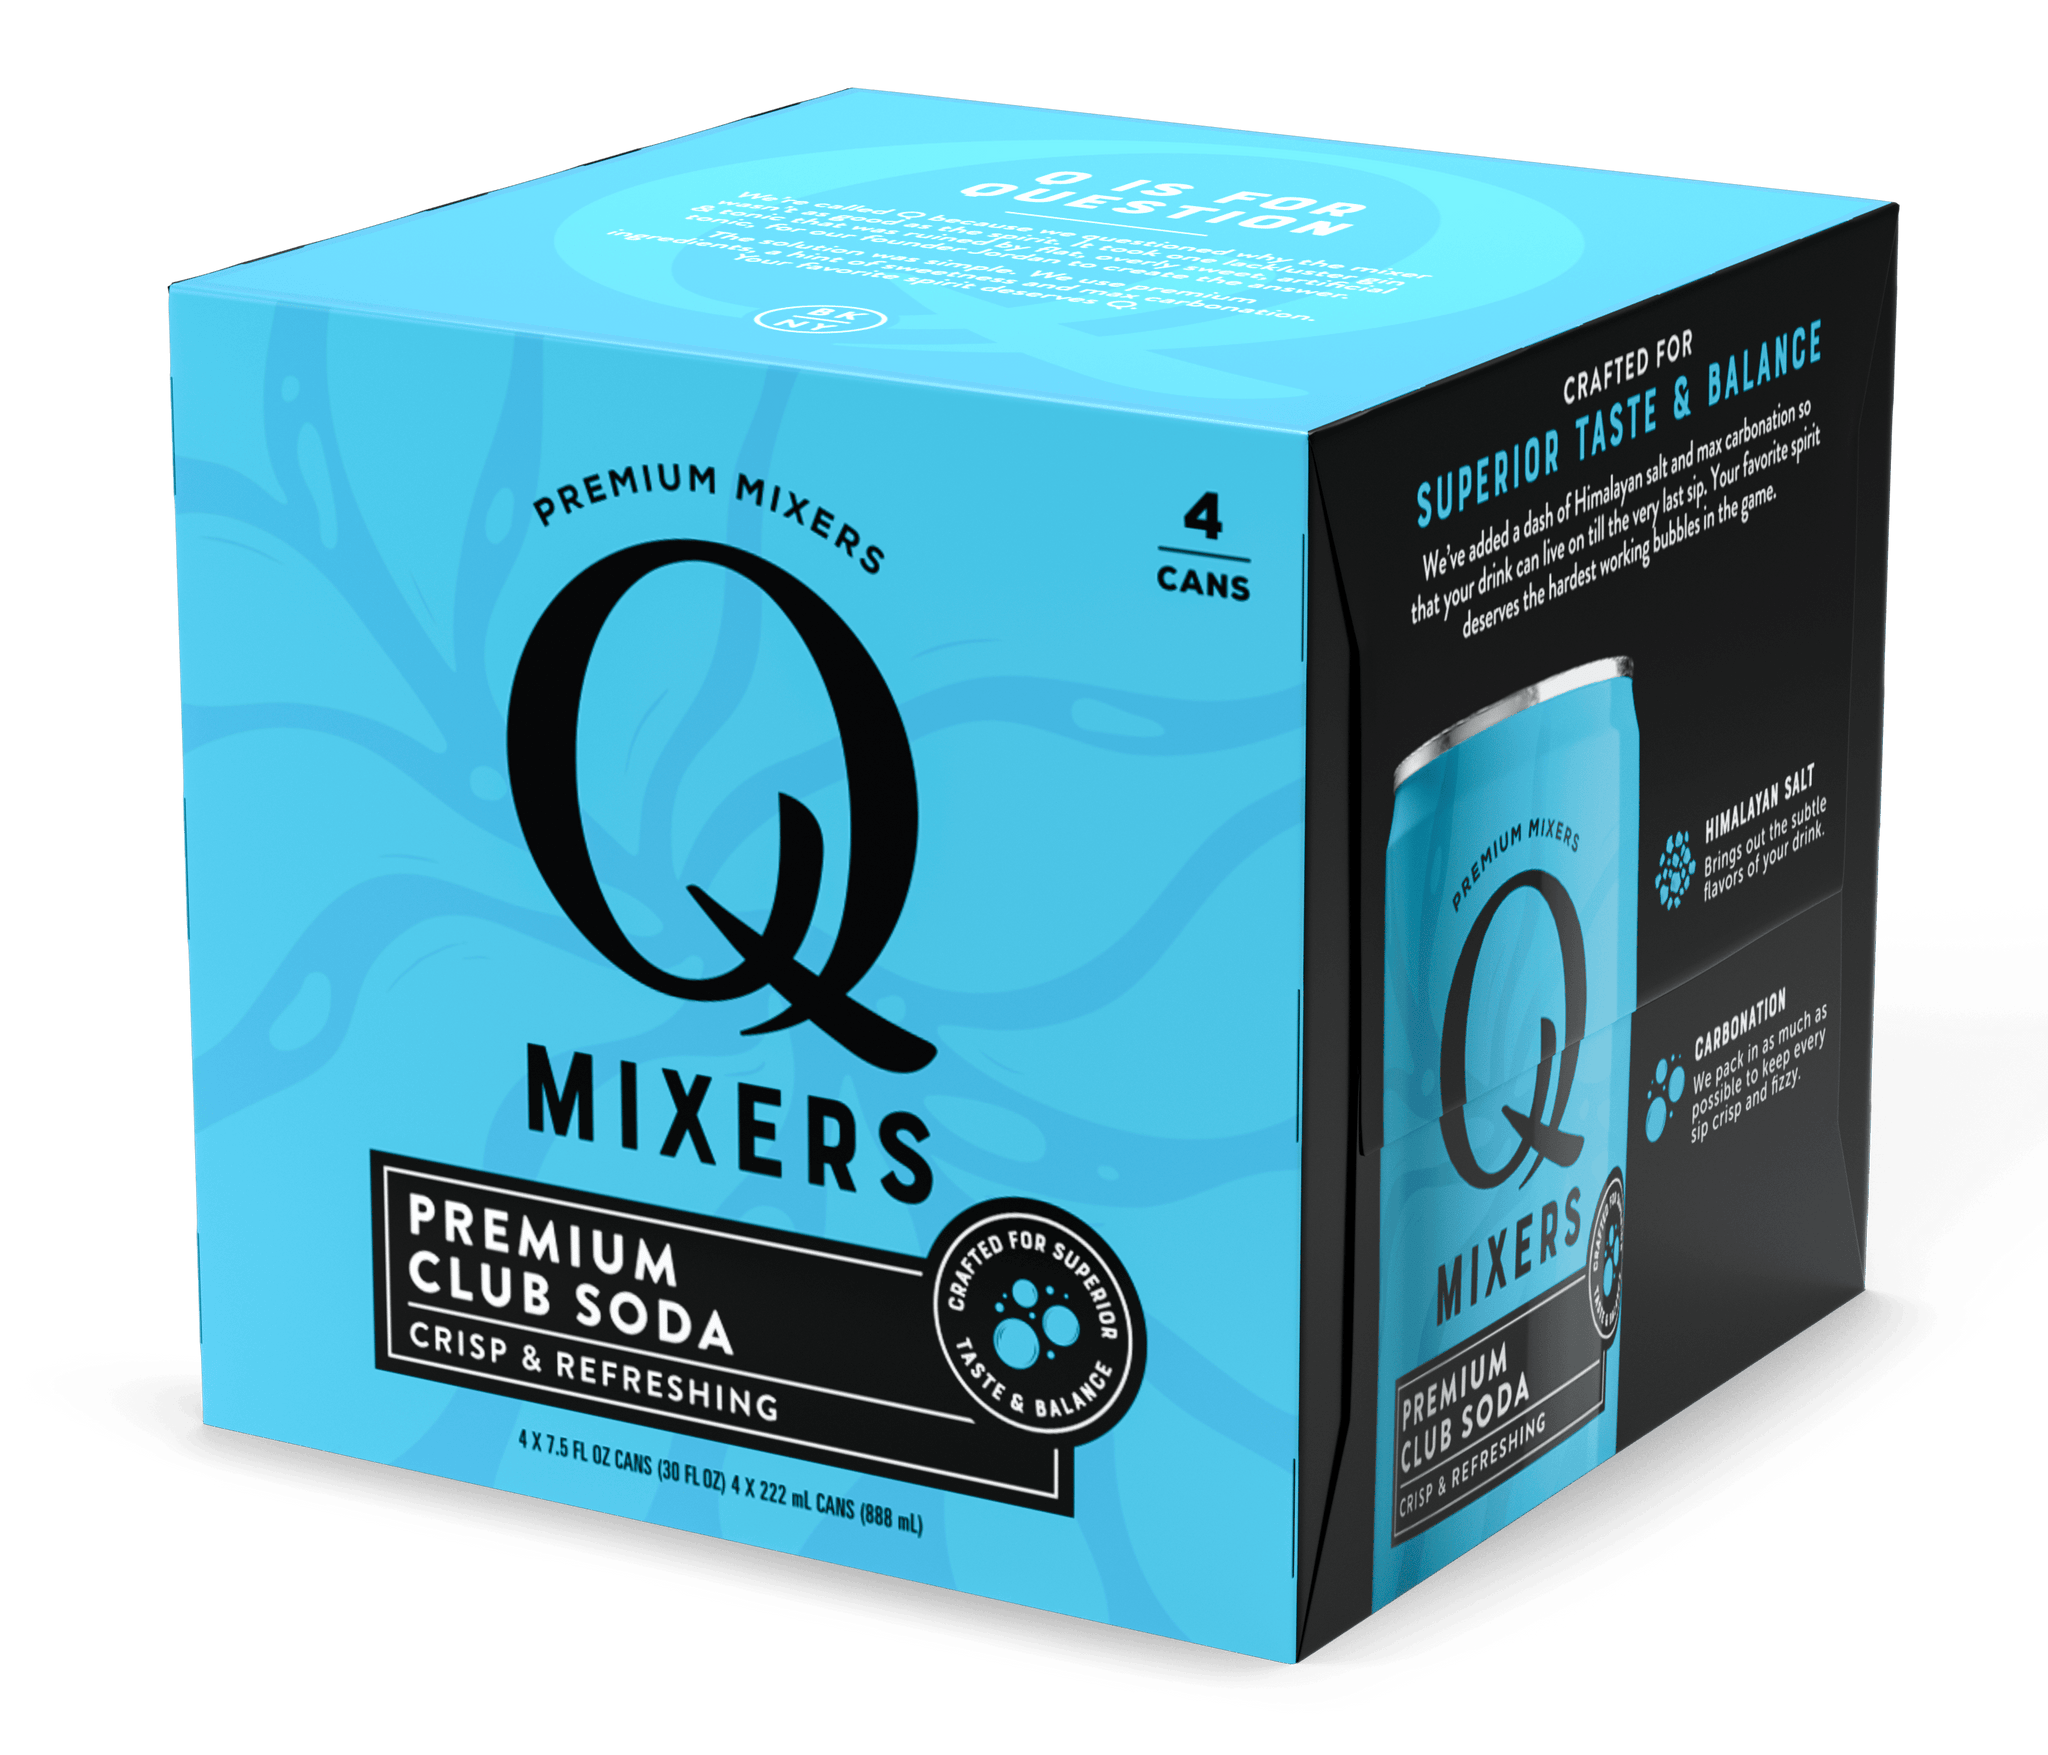 Q Mixers Club Soda - 24pk/7.5 fl oz Cans